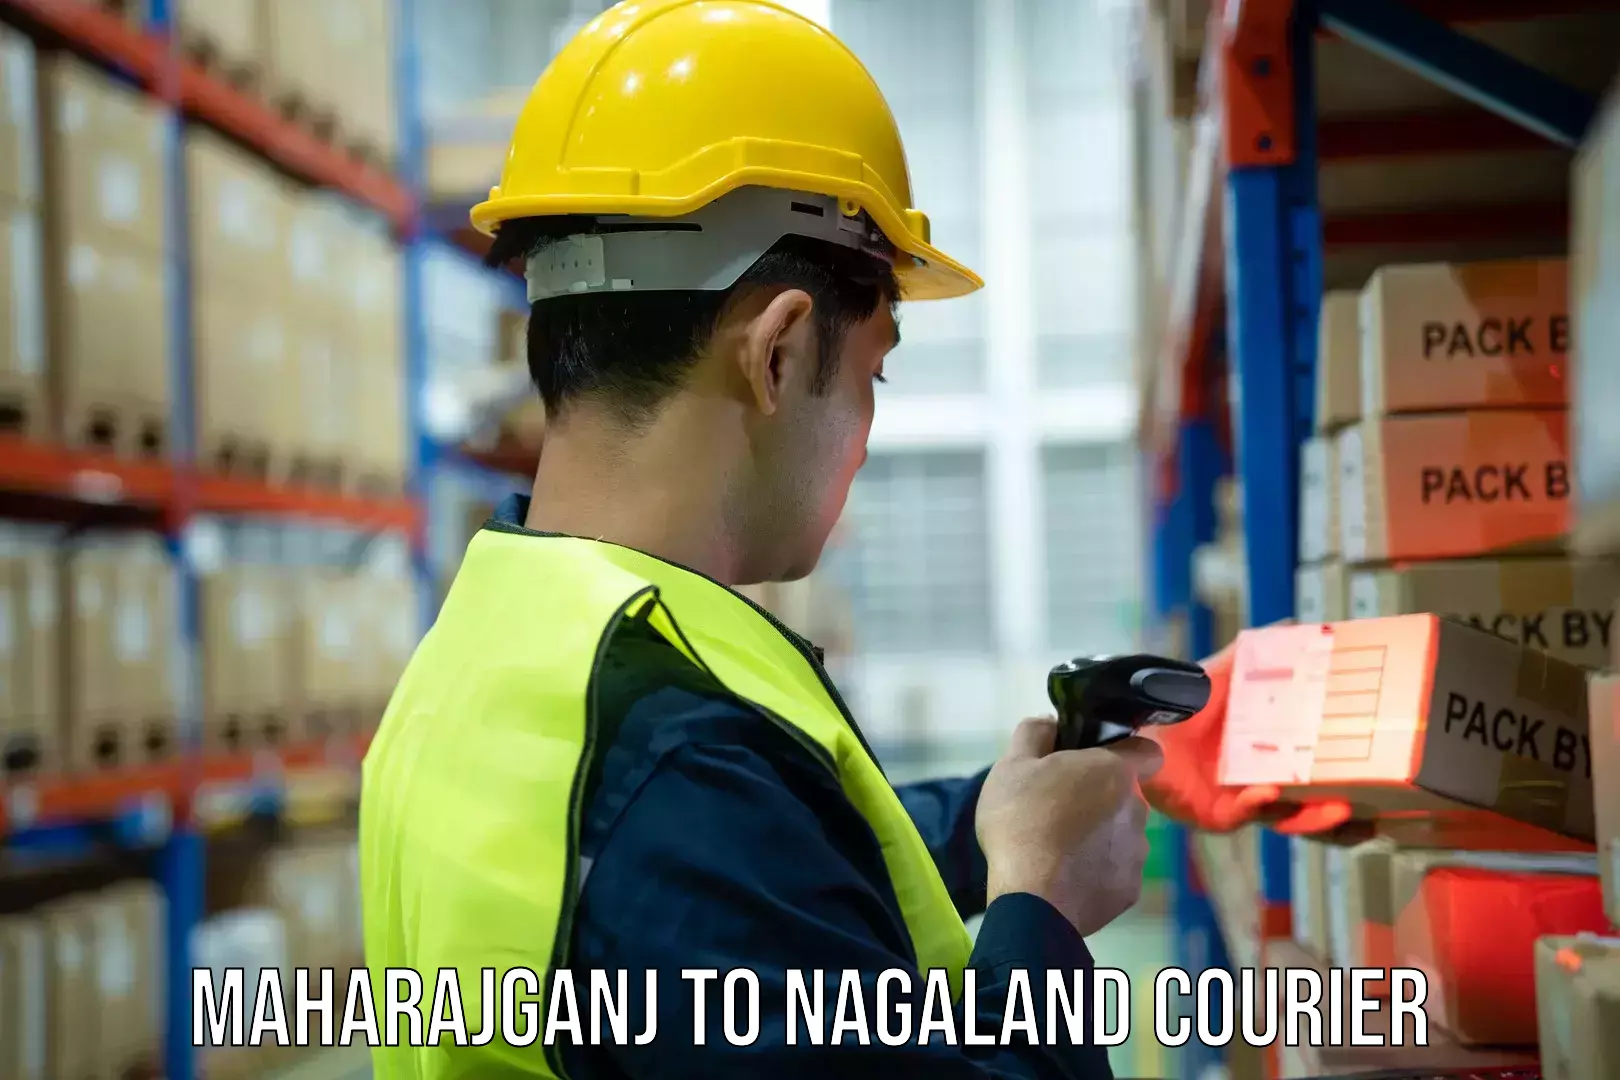 High-performance logistics Maharajganj to Nagaland